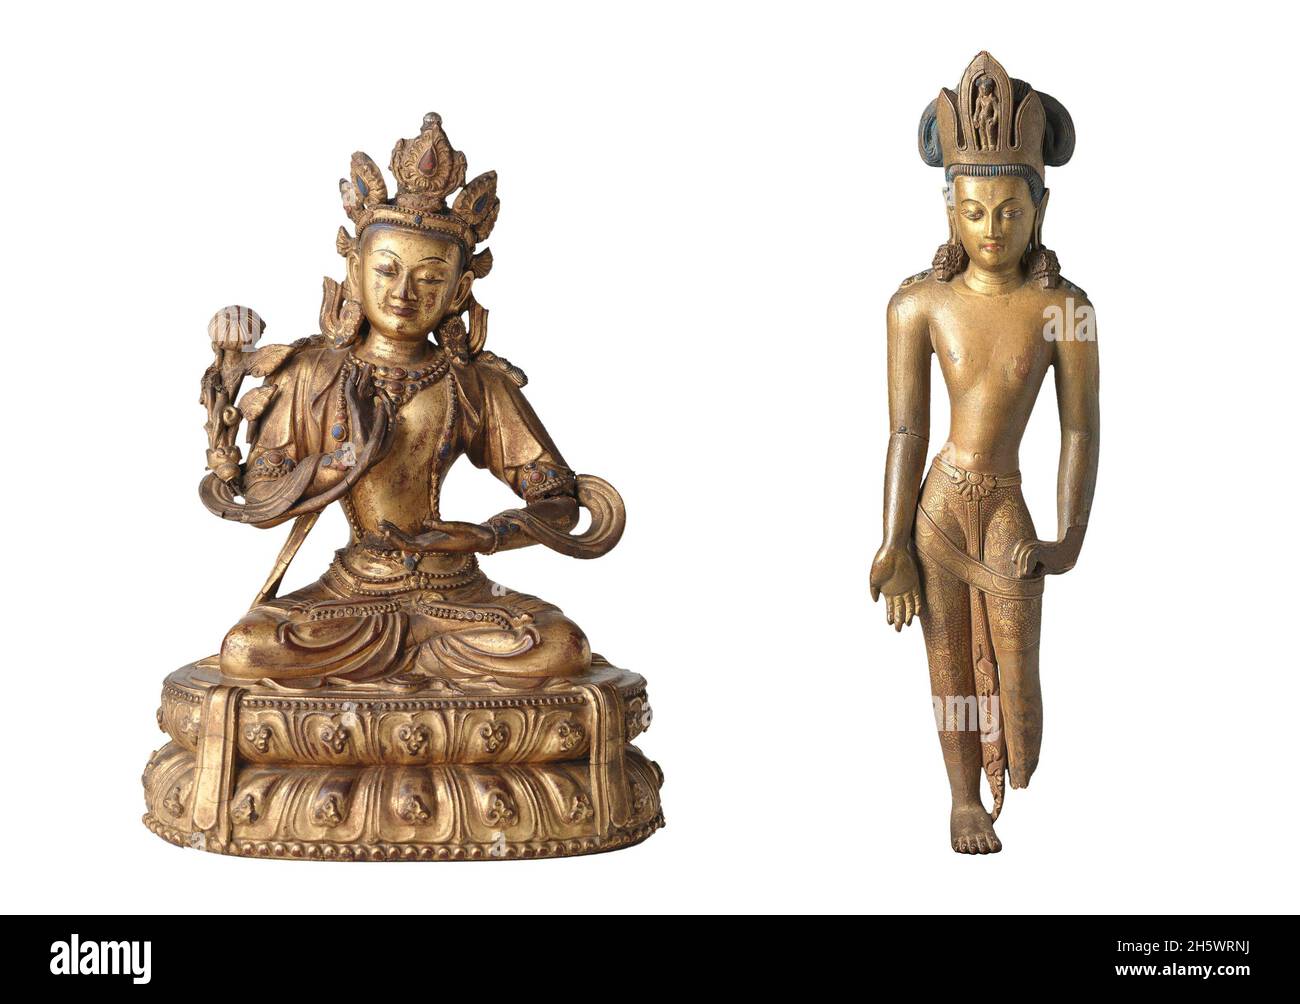 Immagini buddiste in scultura. A SINISTRA: Statua di un bodhisattva seduto (eventualmente Mahsthamaprapta). Il bodhisattva tiene un gambo di loto nella sua mano destra. Tiene la mano sinistra, palmo in alto, davanti alla vita. DESTRA: In piedi bodhisattva nel gesto di Tribhanga. Foto Stock